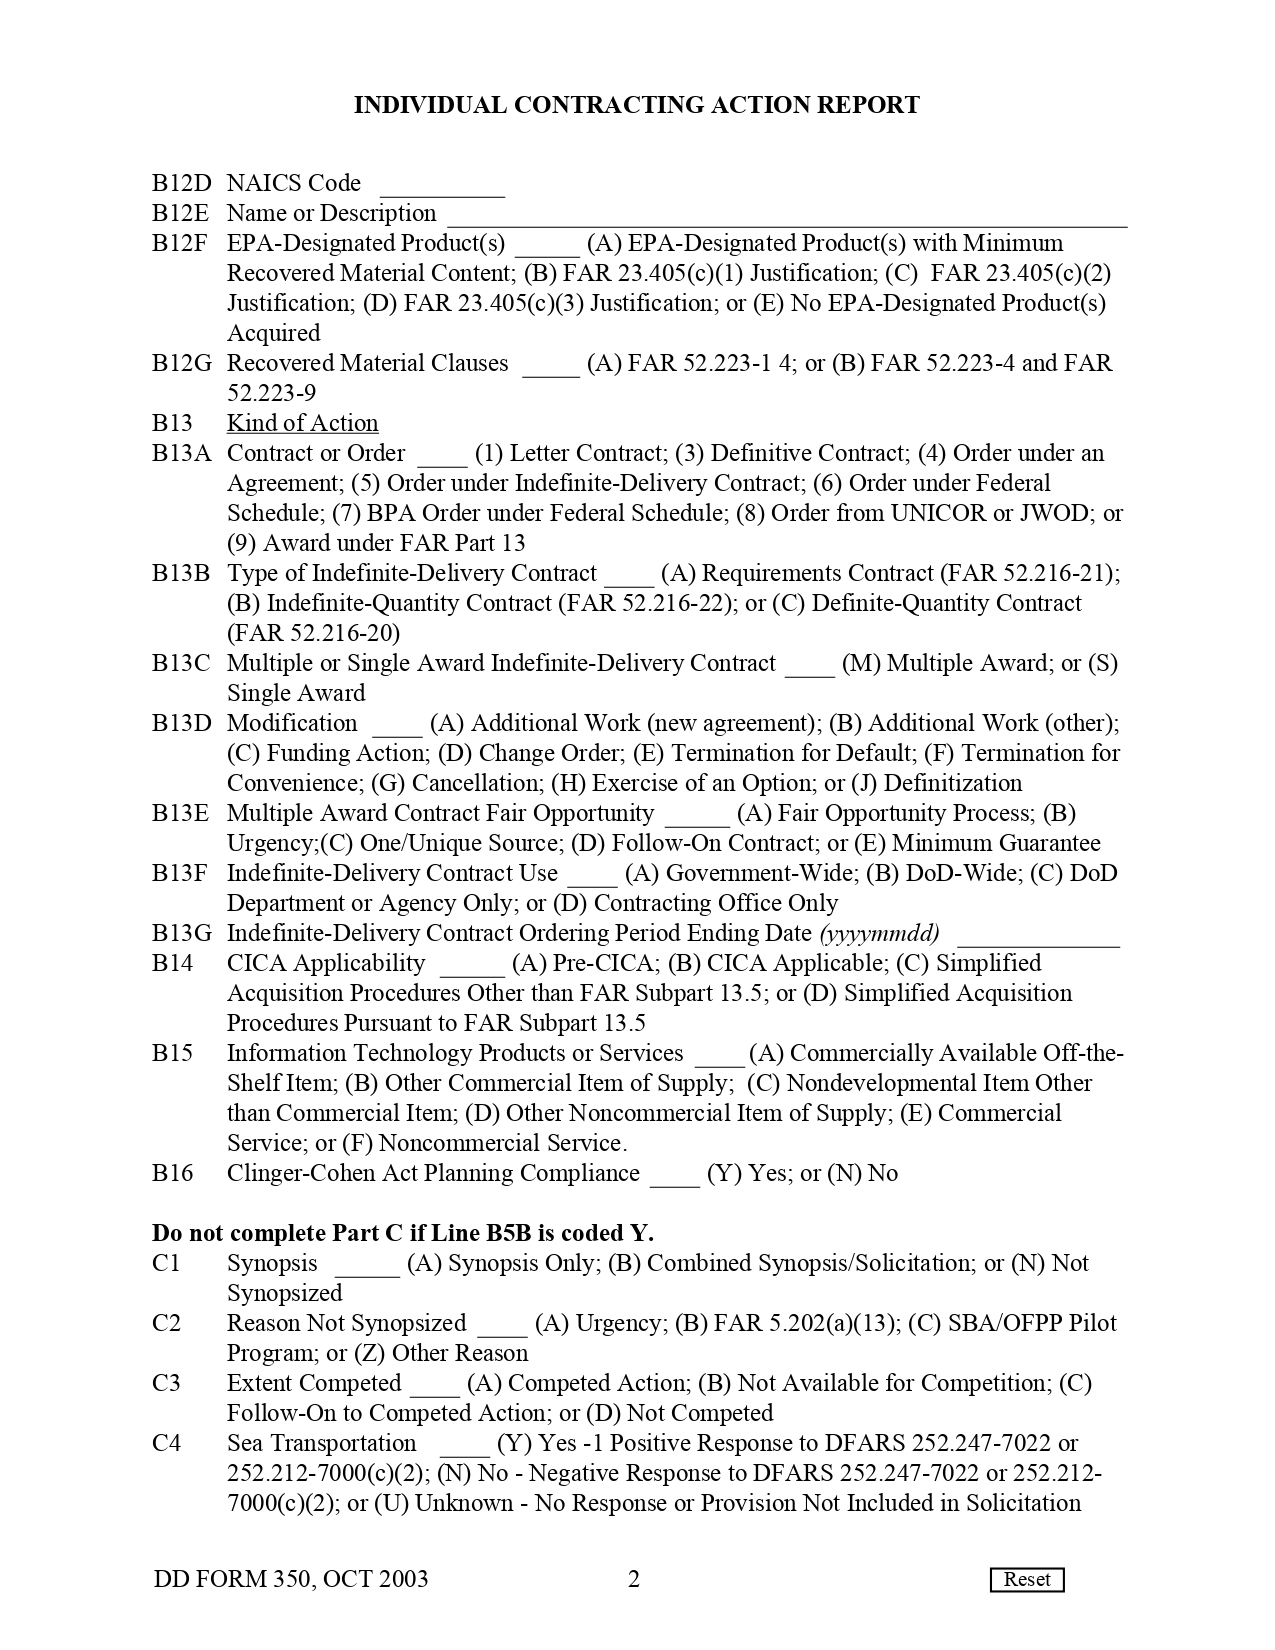 DD Form 350 - Page 2